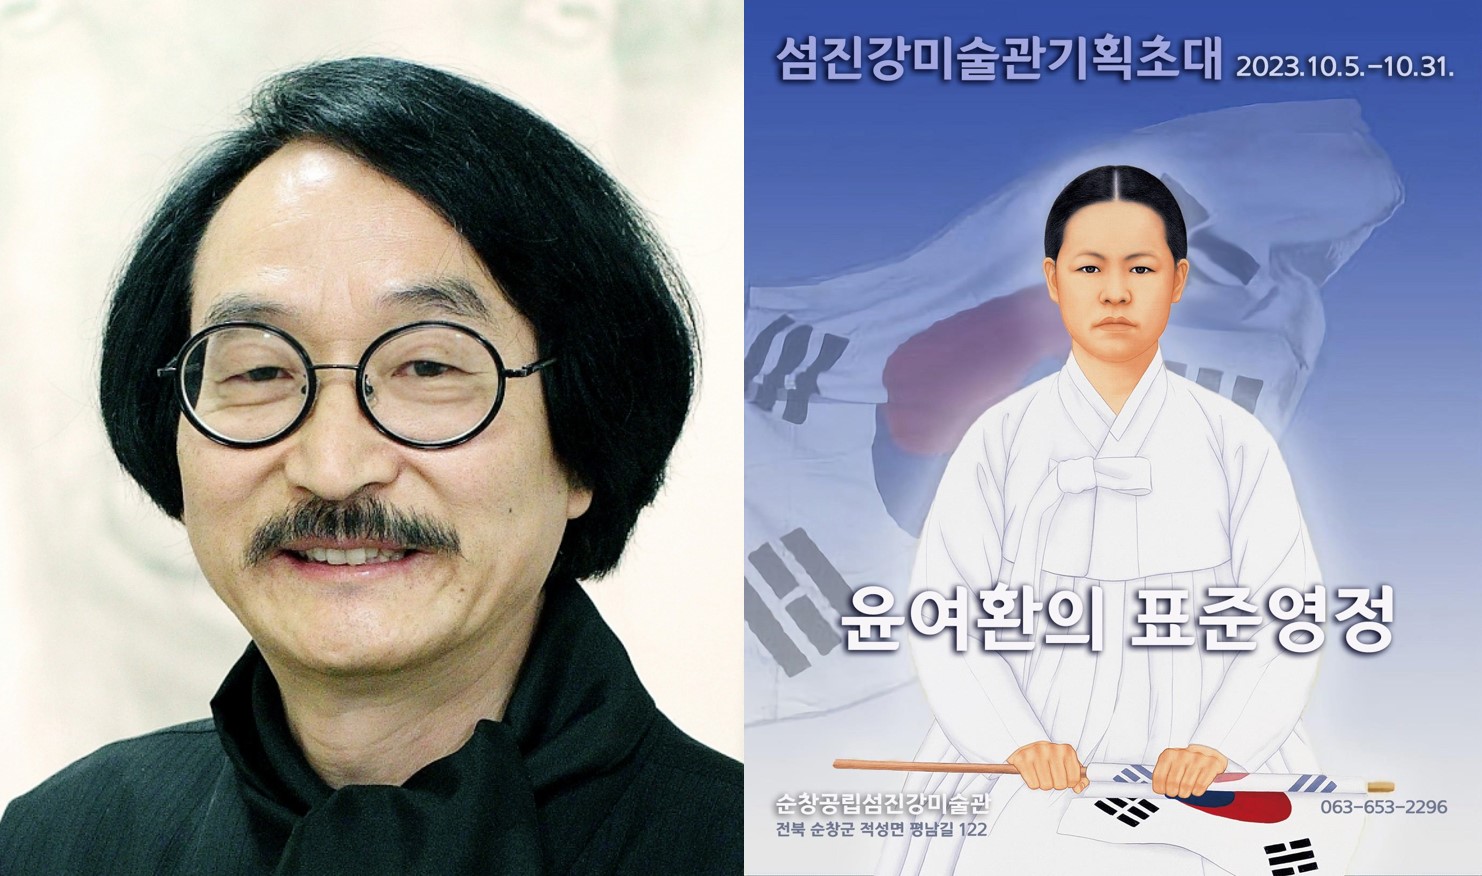 윤여환 명예교수, ‘윤여환의 표준영정’展 개최 사진